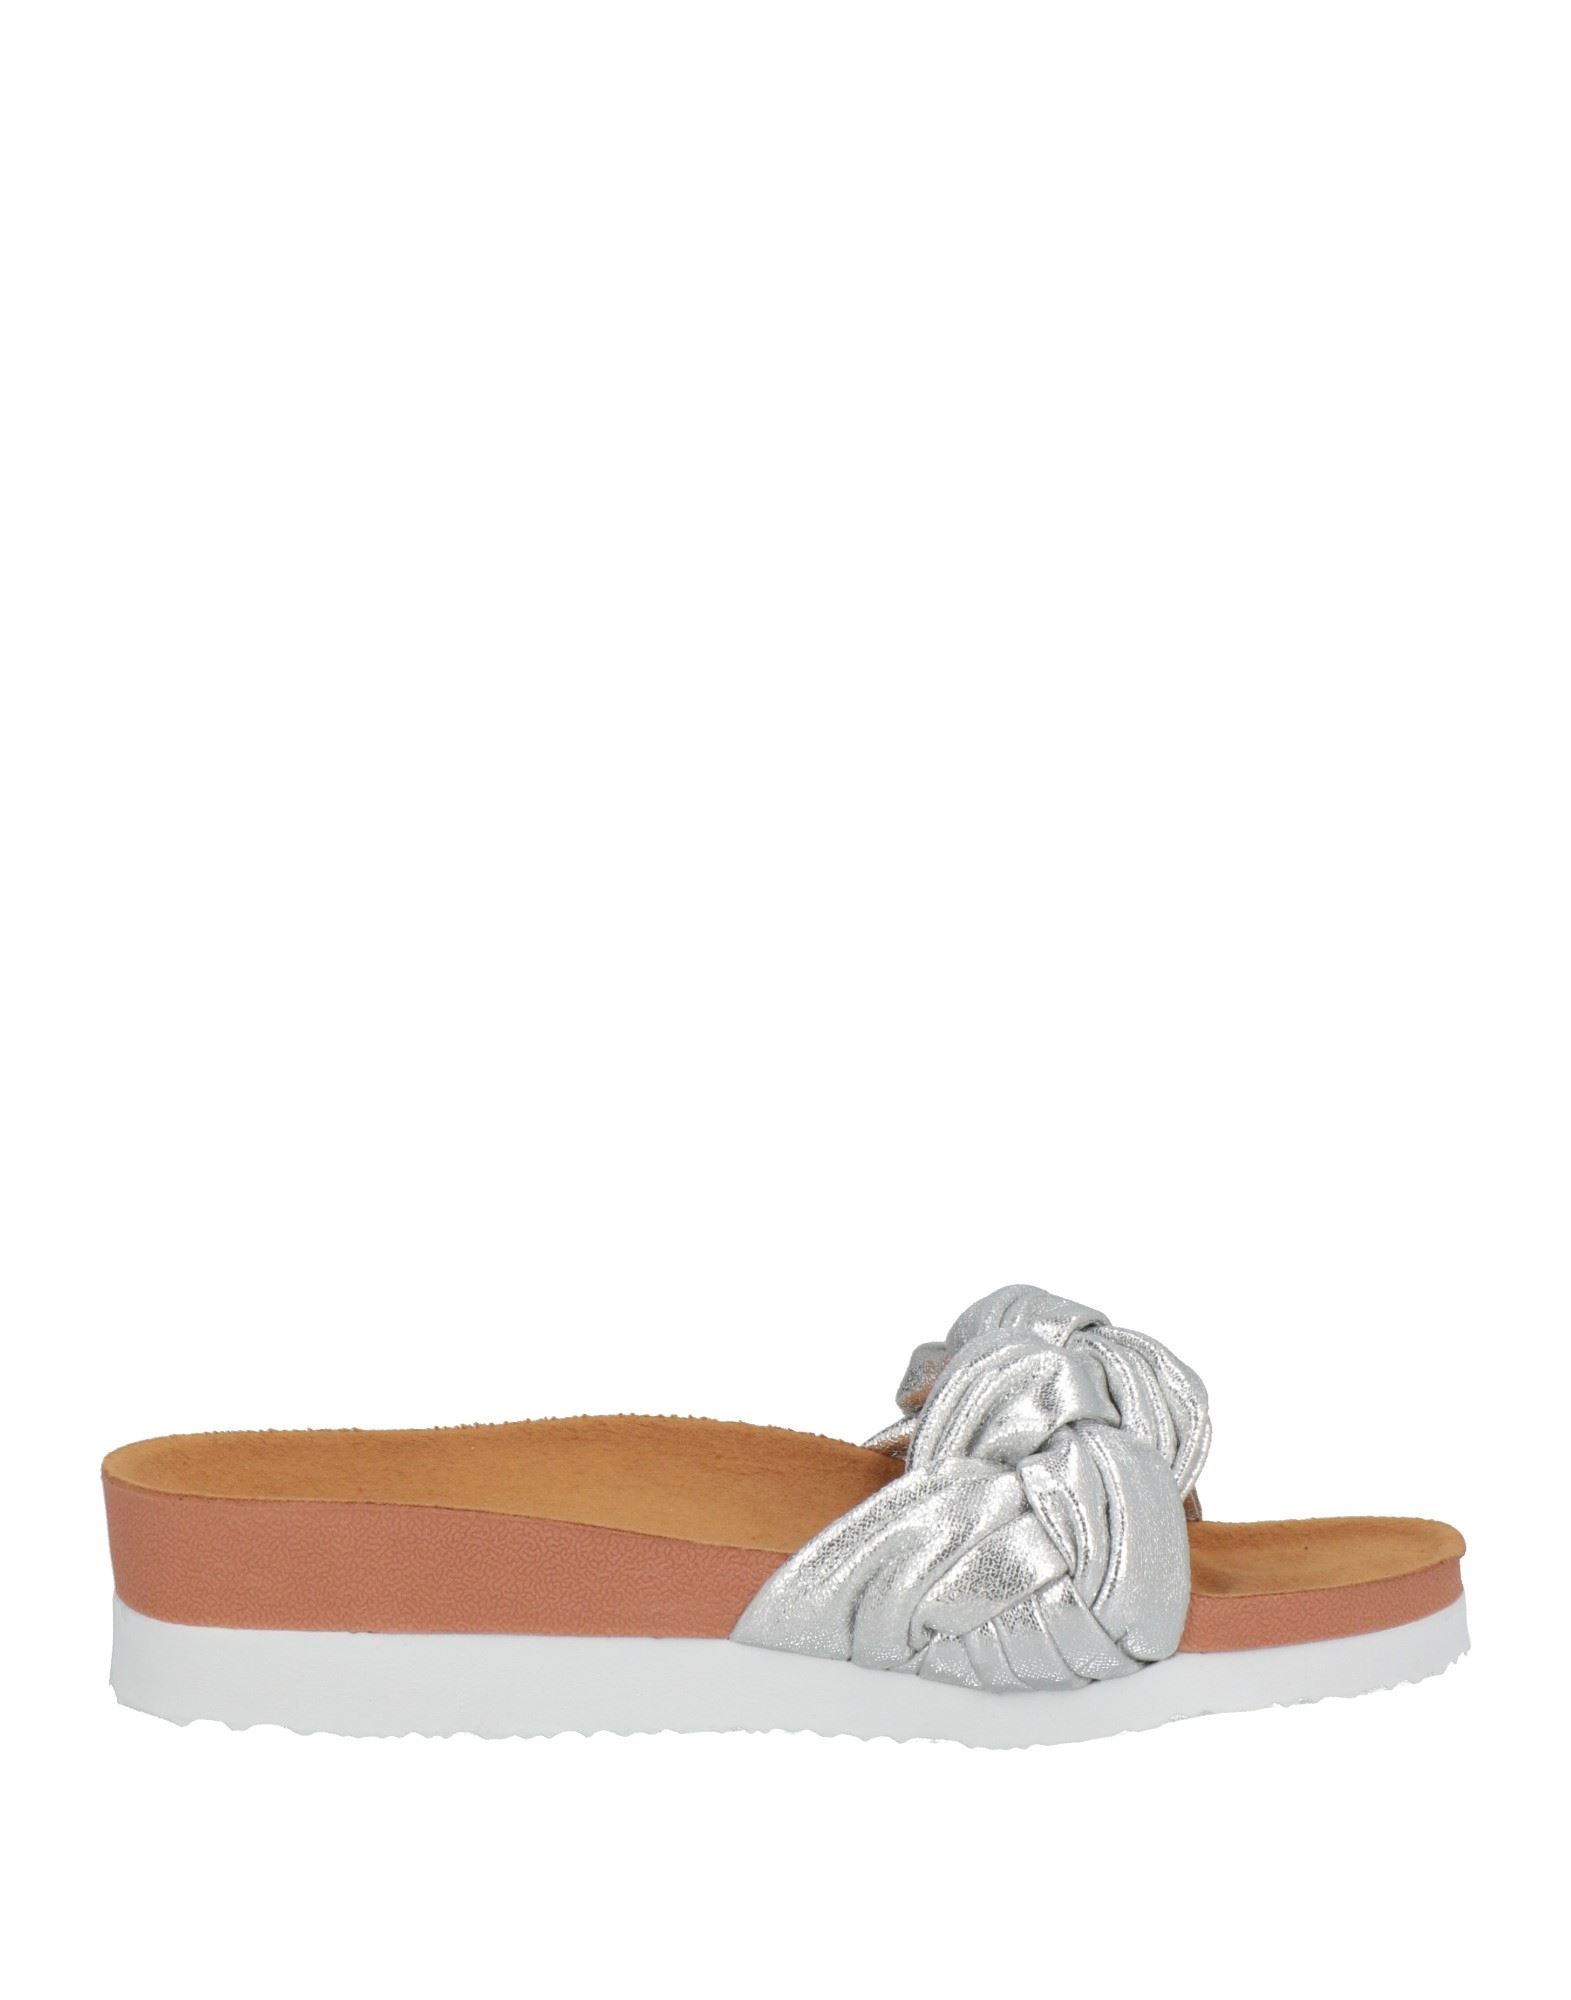 Gioseppo Sandals In Silver